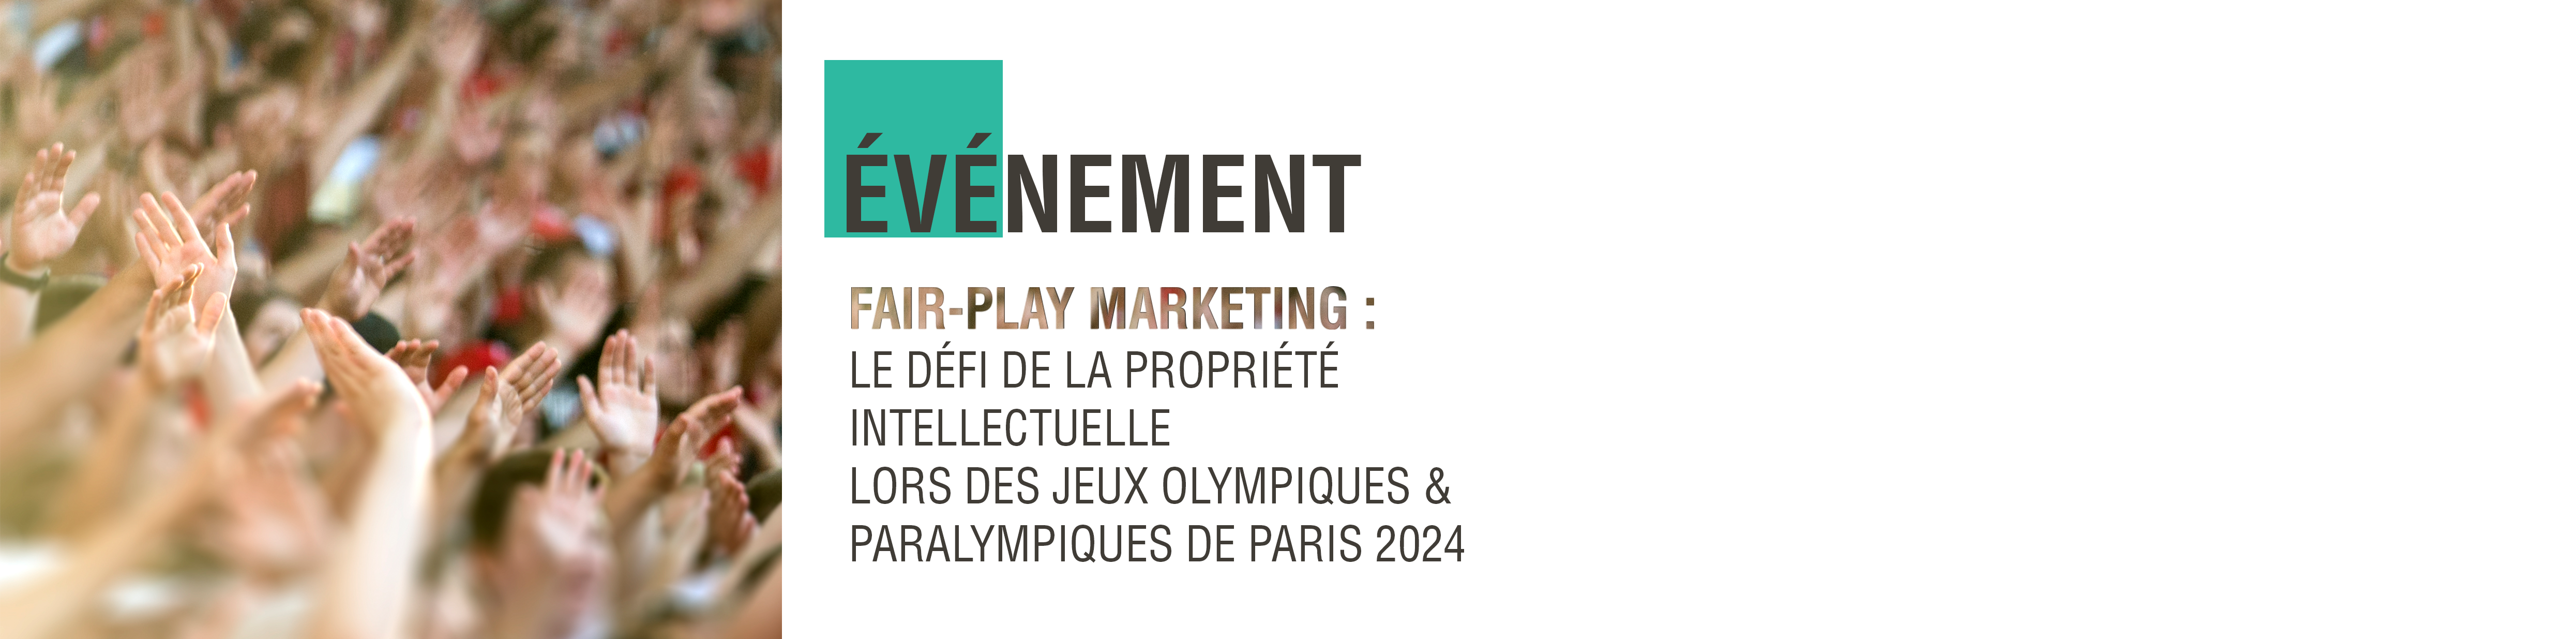 Fair-play marketing : le défi de la propriété intellectuelle lors des Jeux Olympiques & Paralympiques de Paris 2024